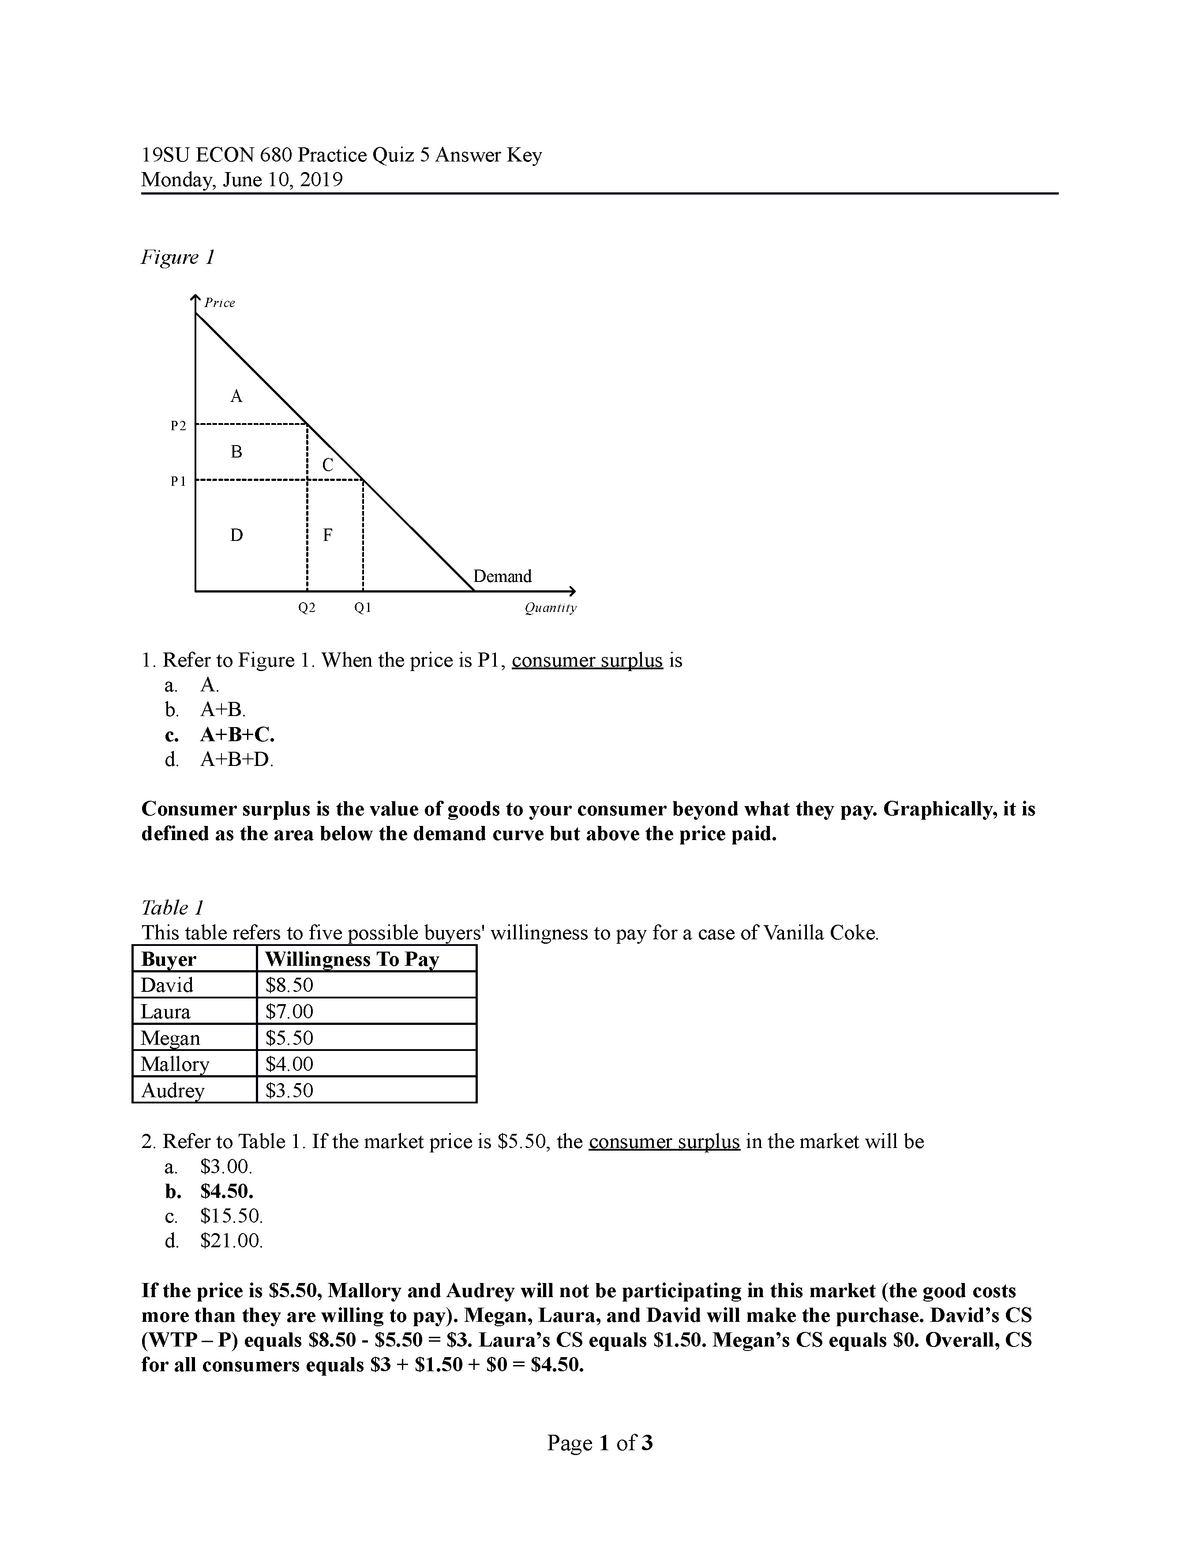 19SU ECON 680 Practice Quiz 5 (answer key) StuDocu